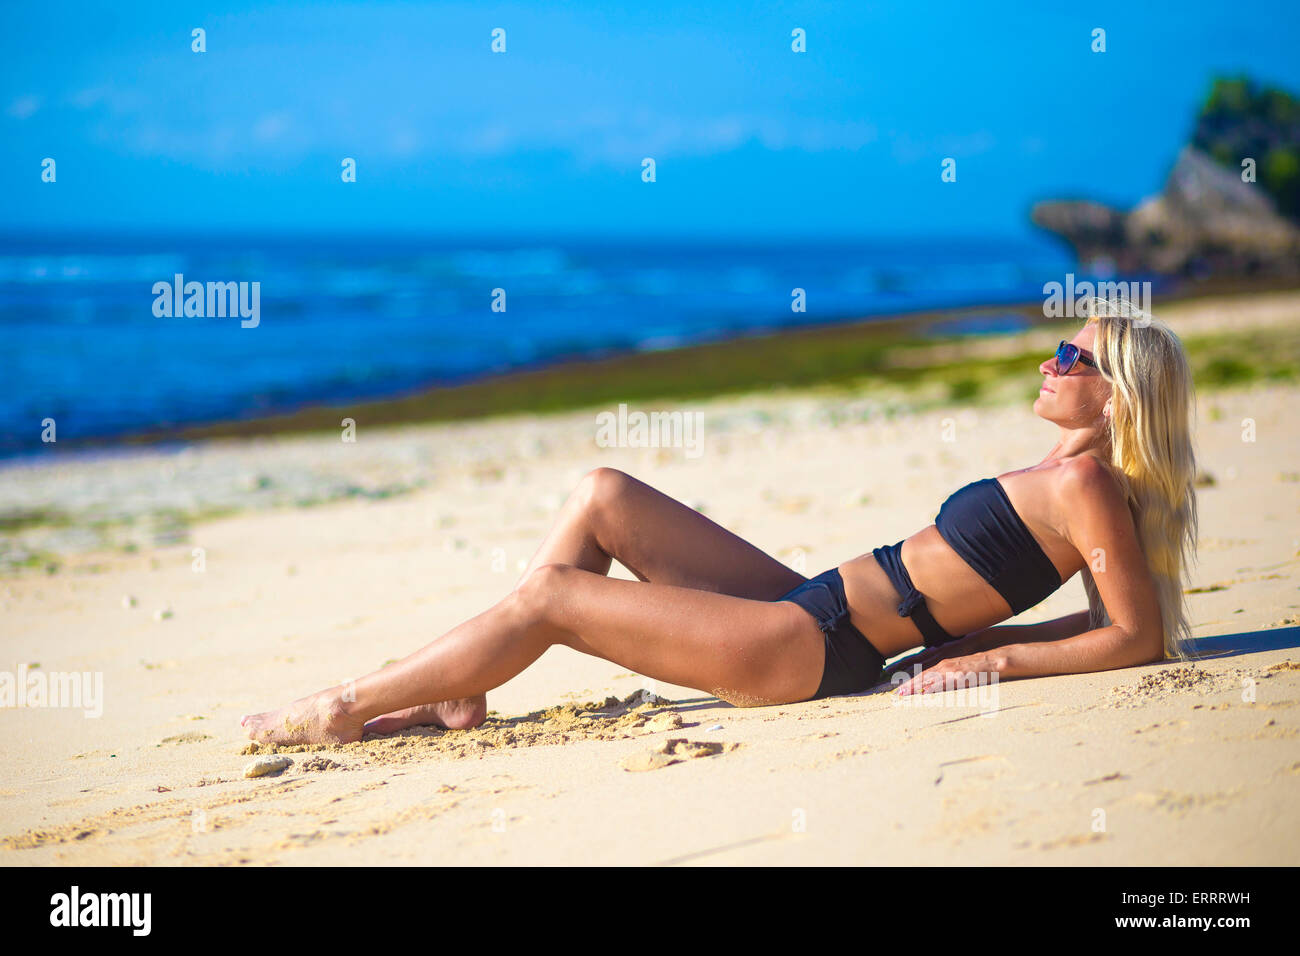 Young woman in bikini on a beach. Stock Photo